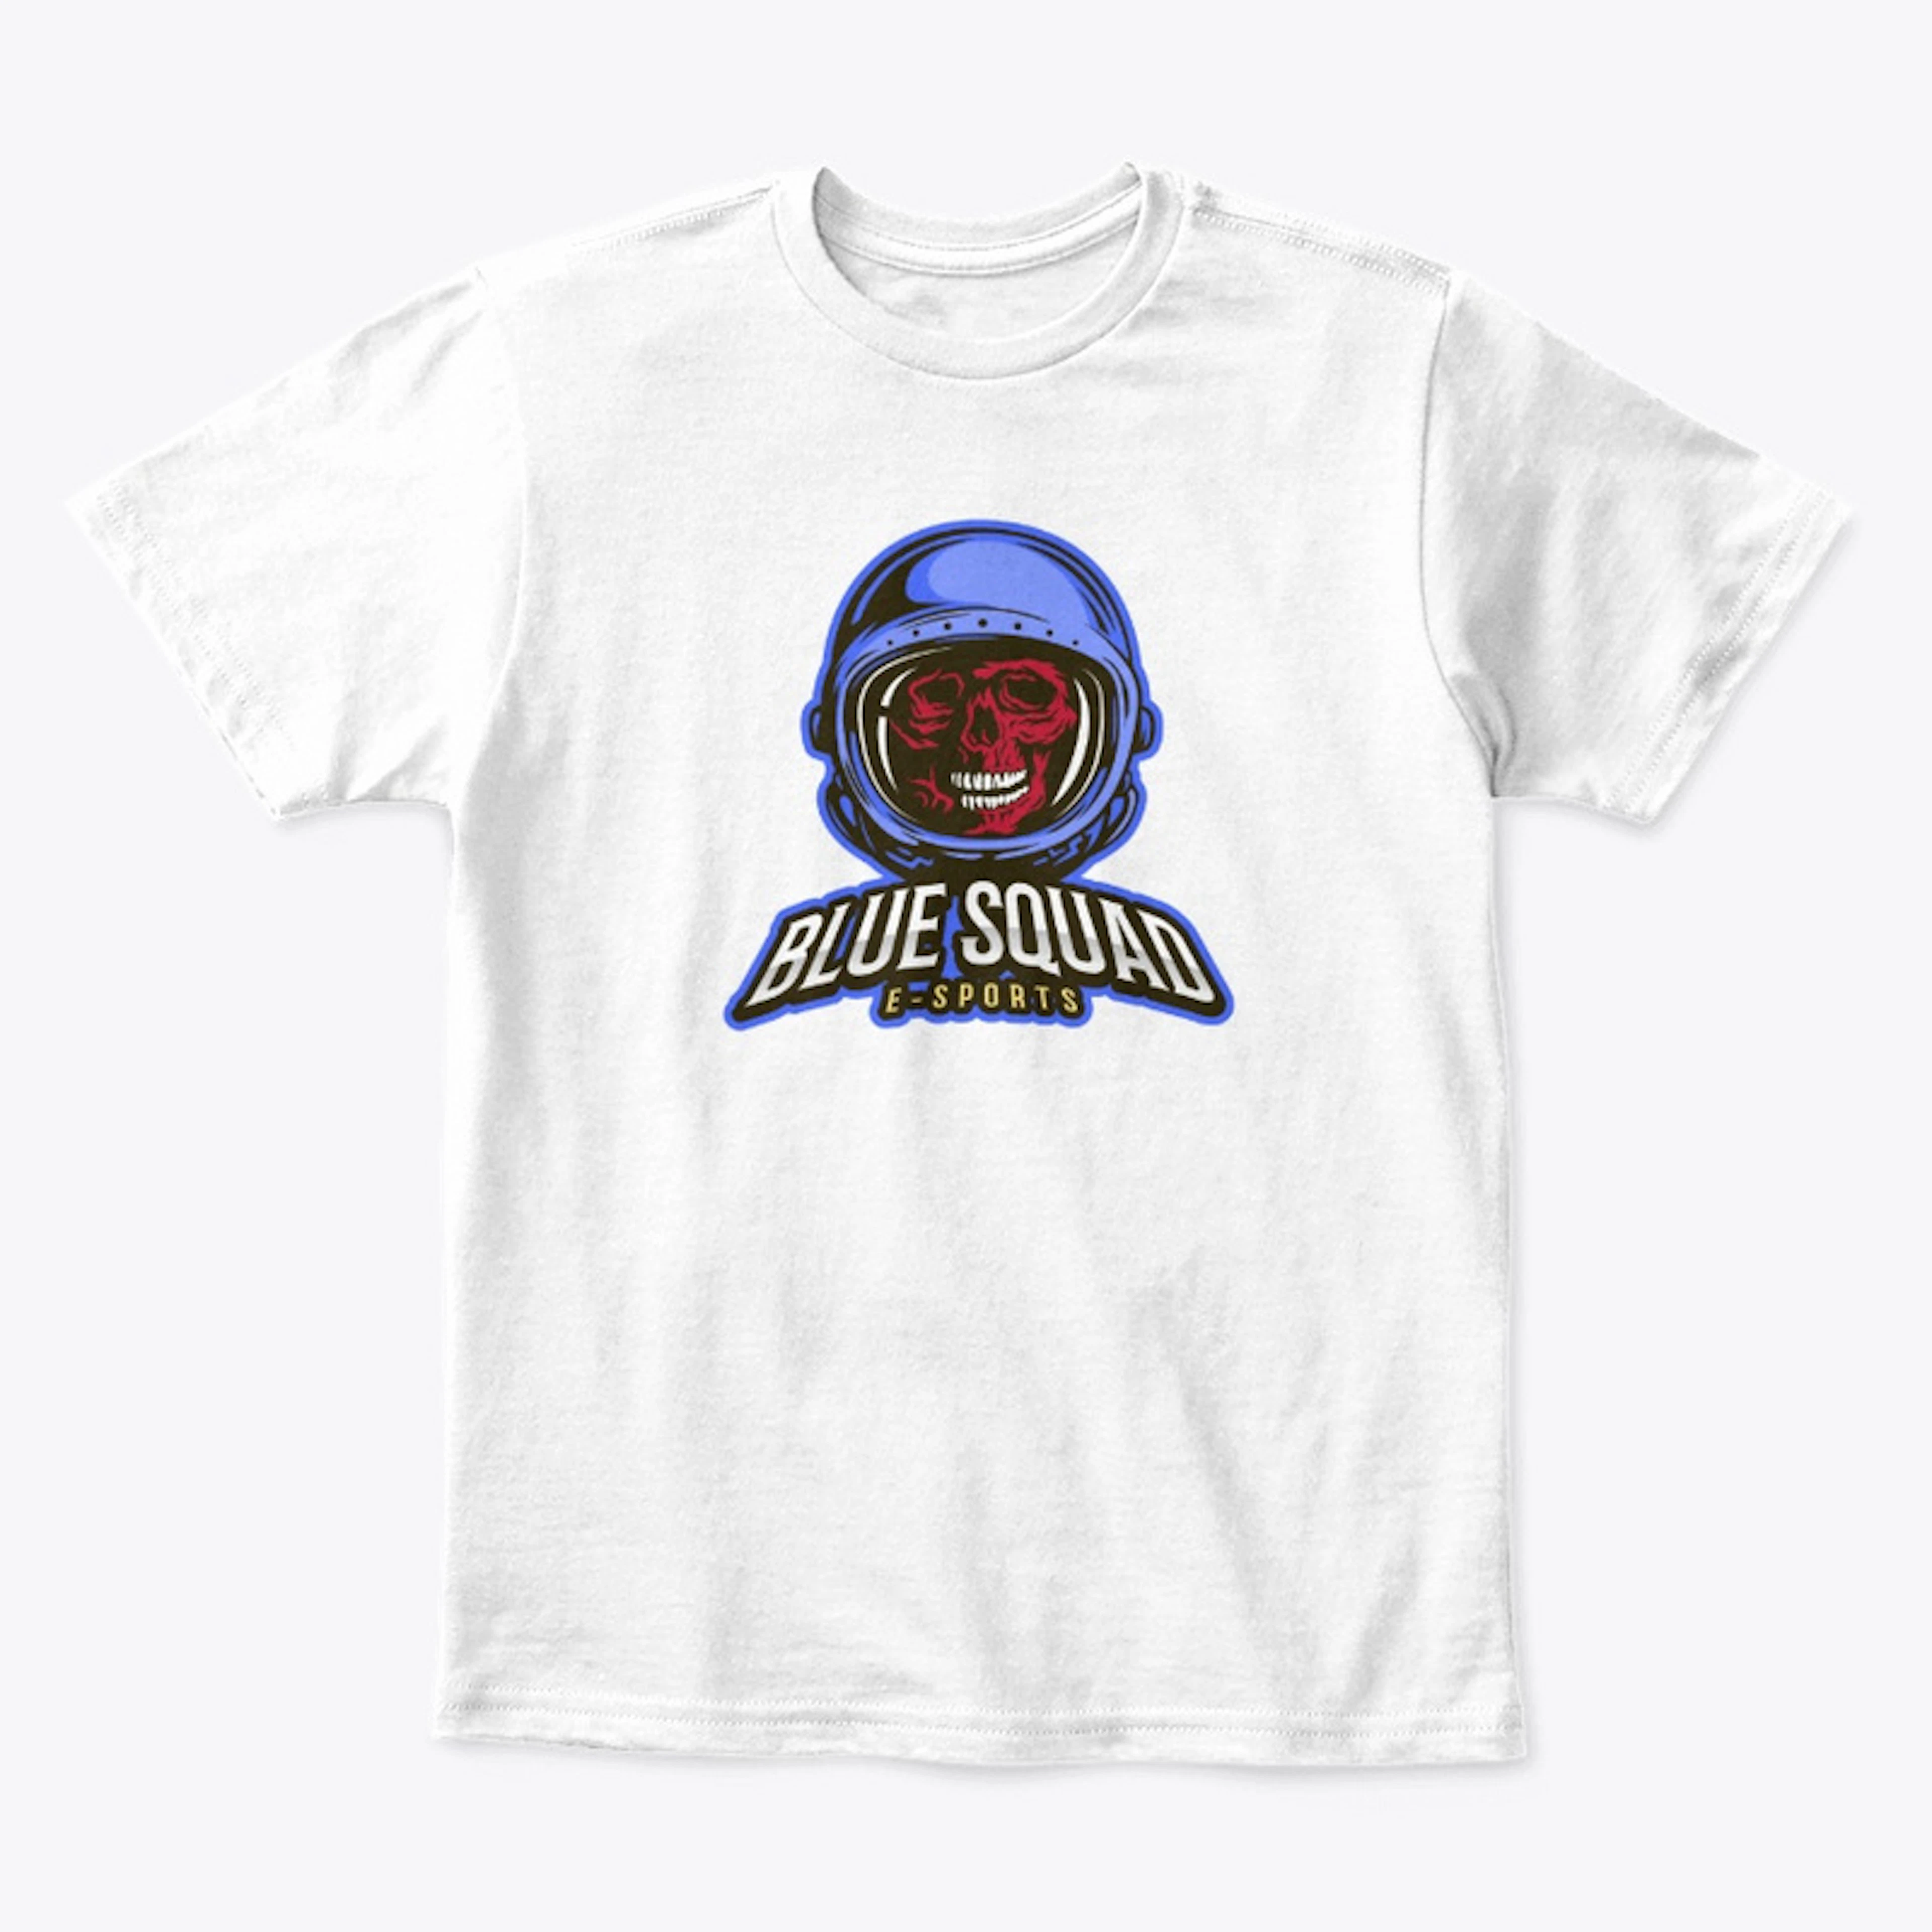 Kid's Blue Squad eSports T-Shirt